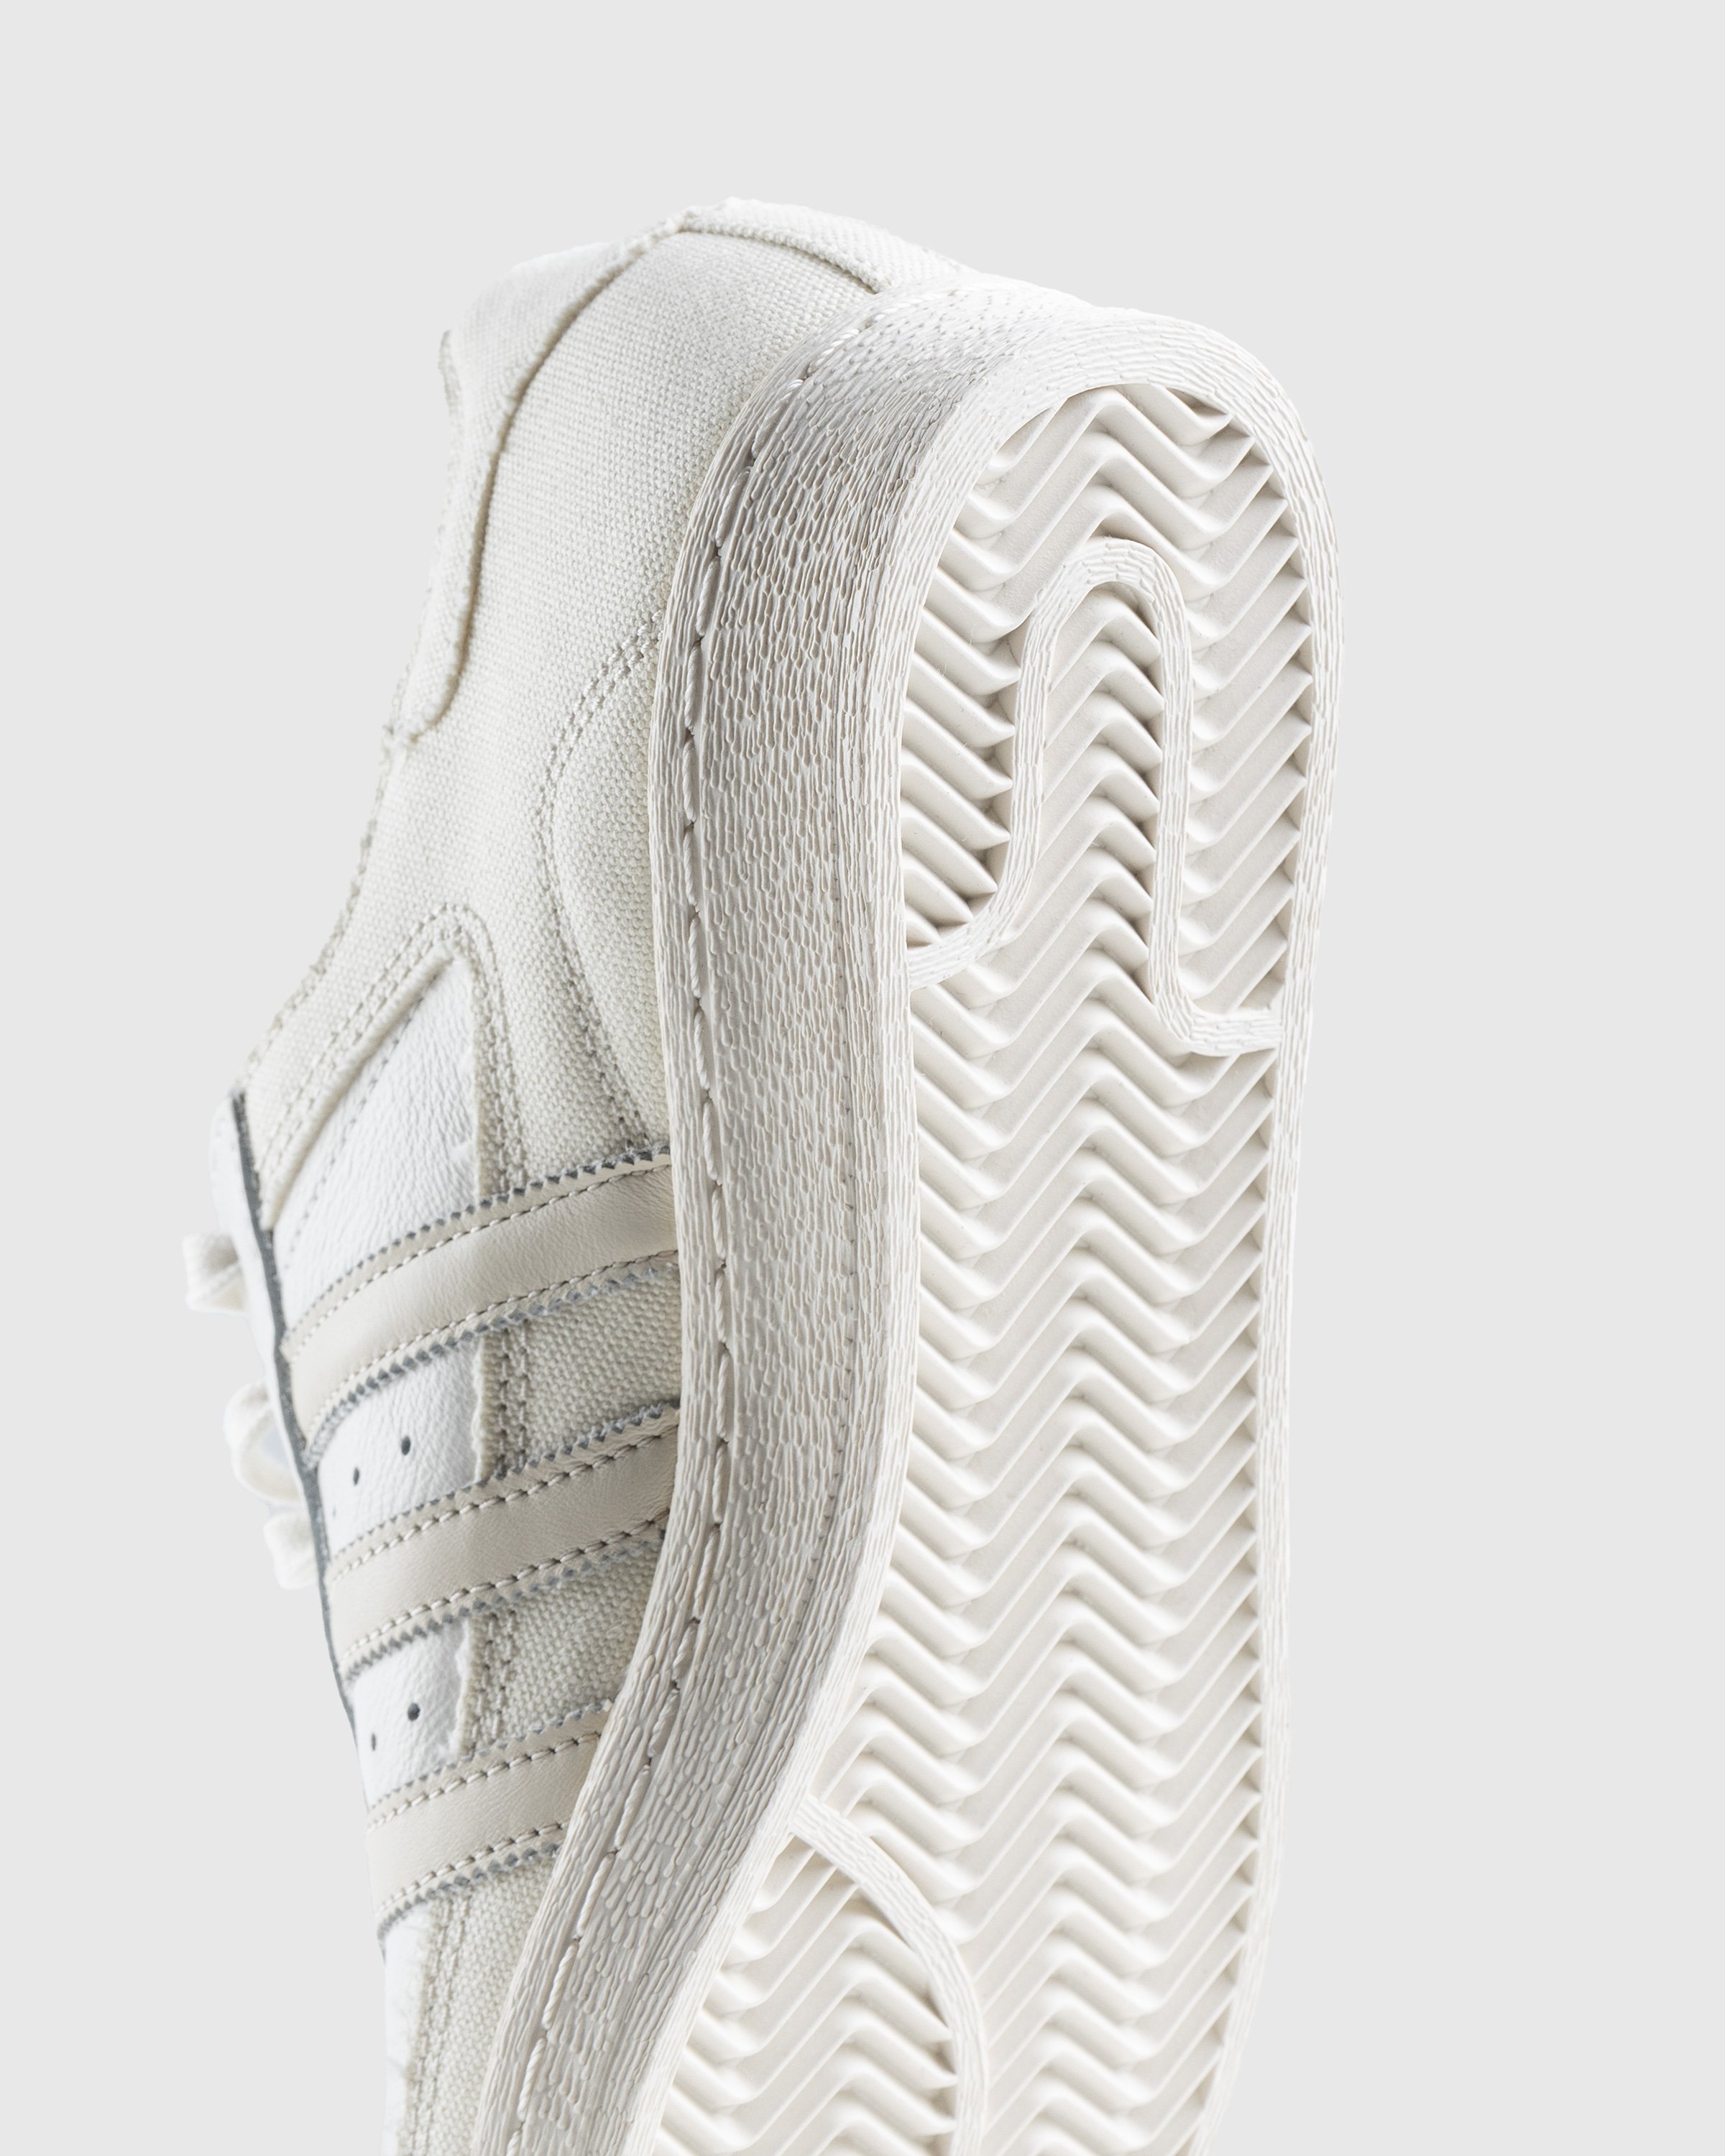 Adidas - Superstar 82 White/Beige - Footwear - Beige - Image 6